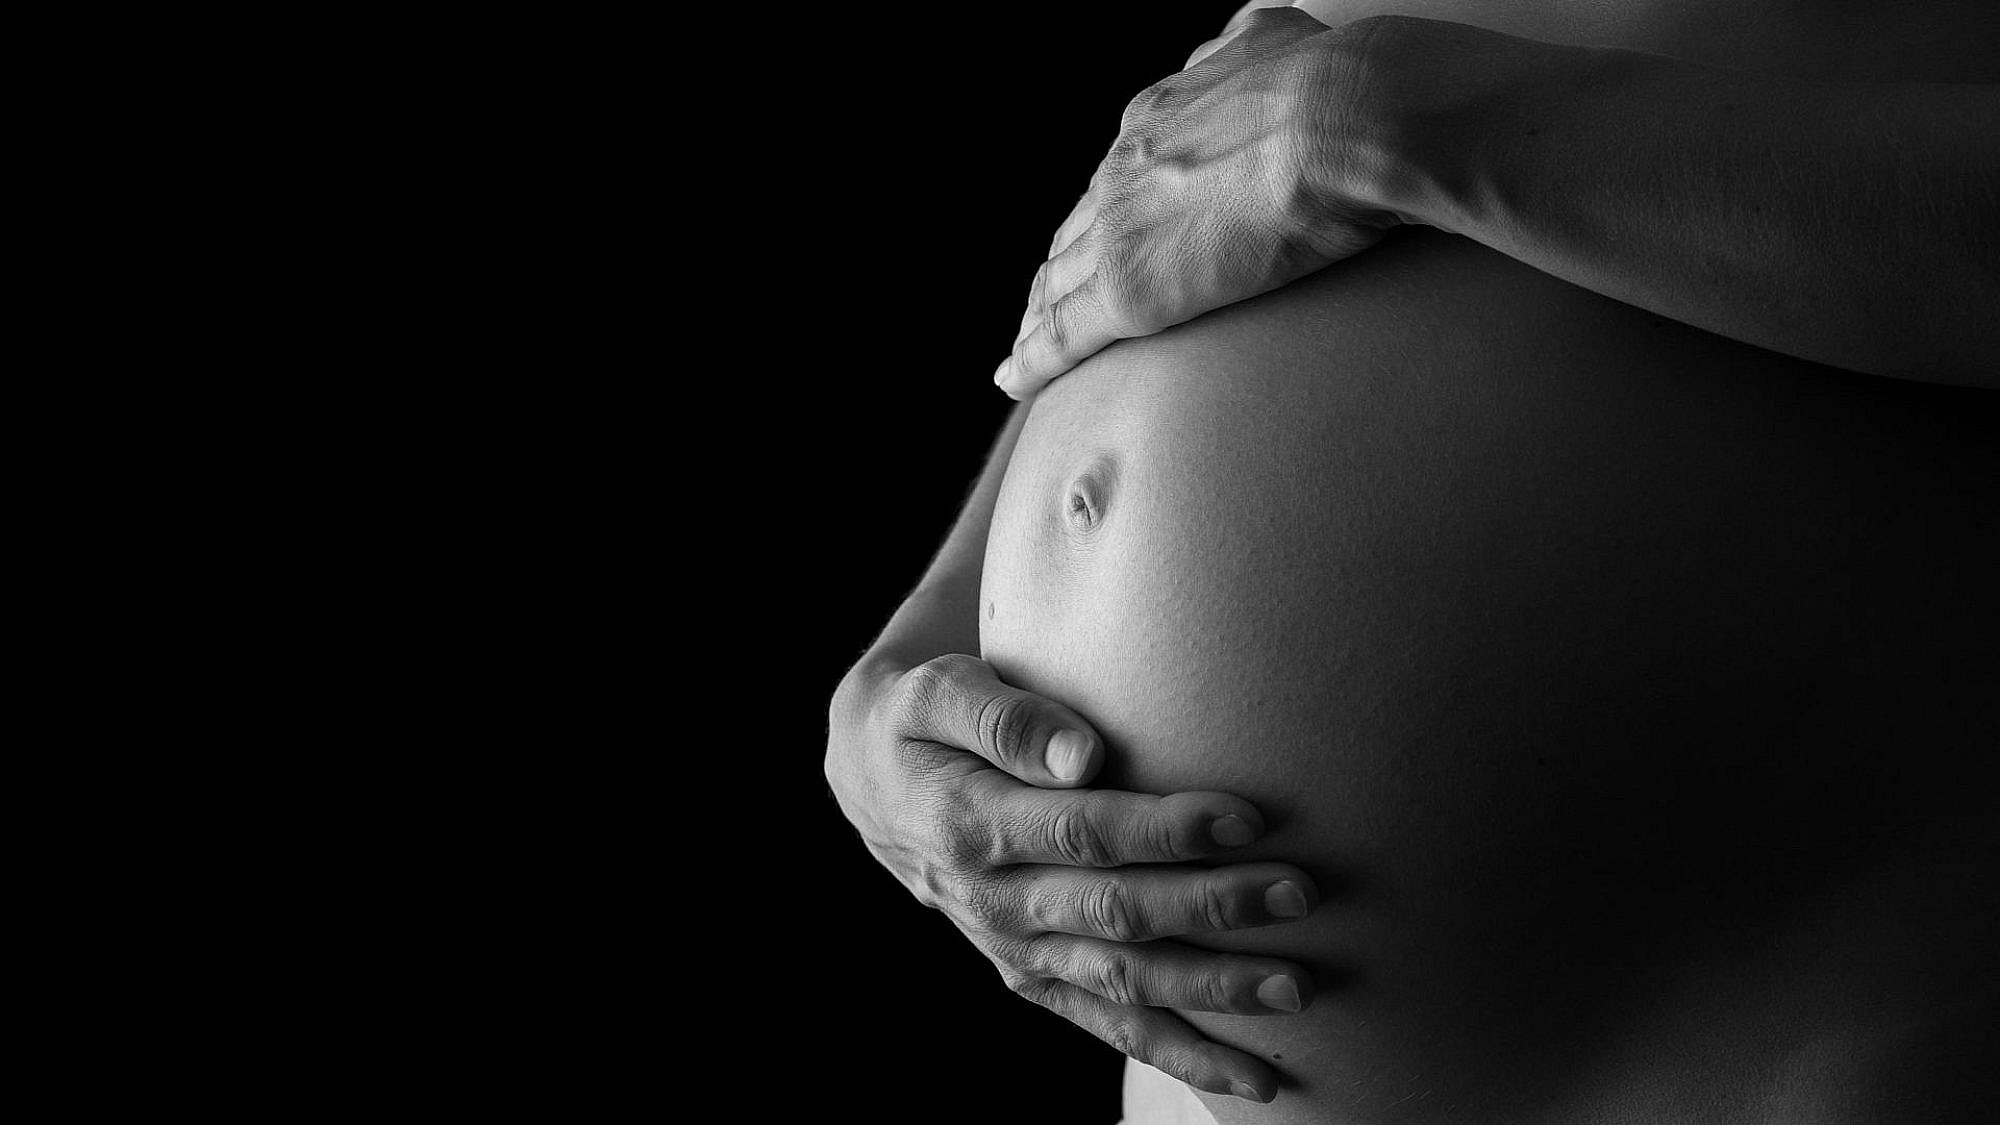 צעירה בהיריון מתקדם והעובר שלה נרצחו | צילום אילוסטרציה: Shutterstock